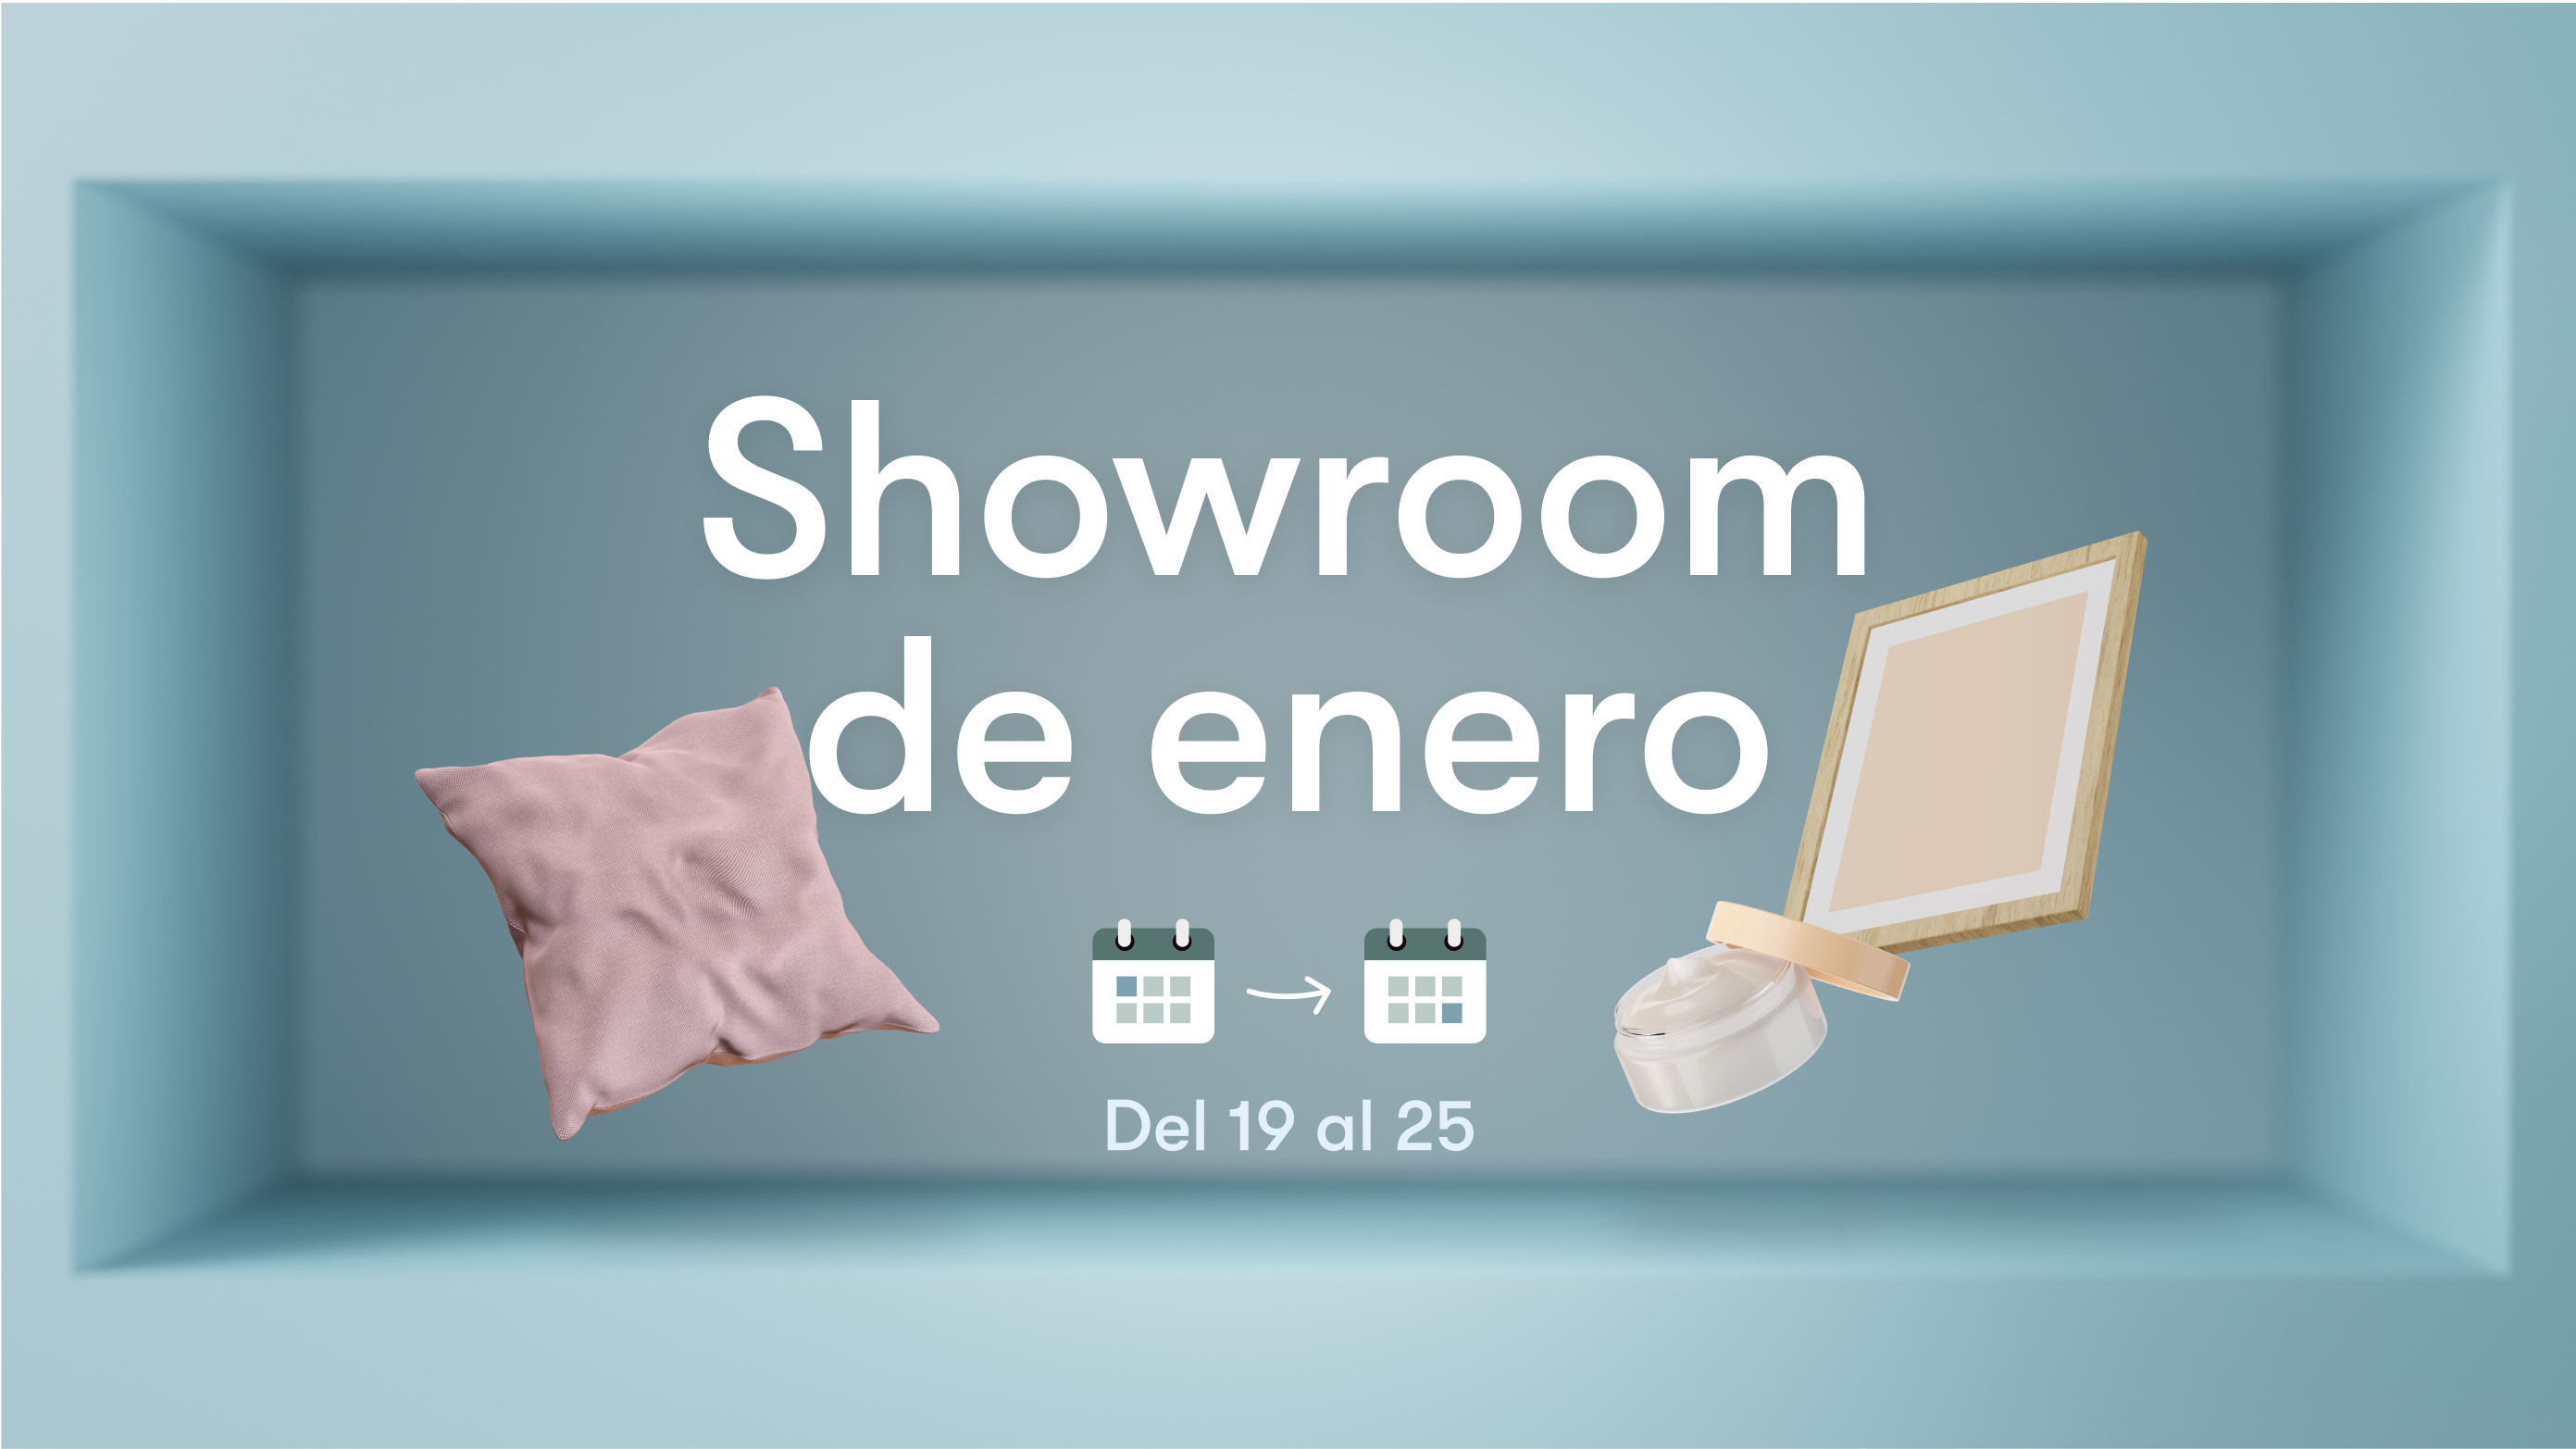 El marketplace Ankorstore lanza su primer Showroom de enero